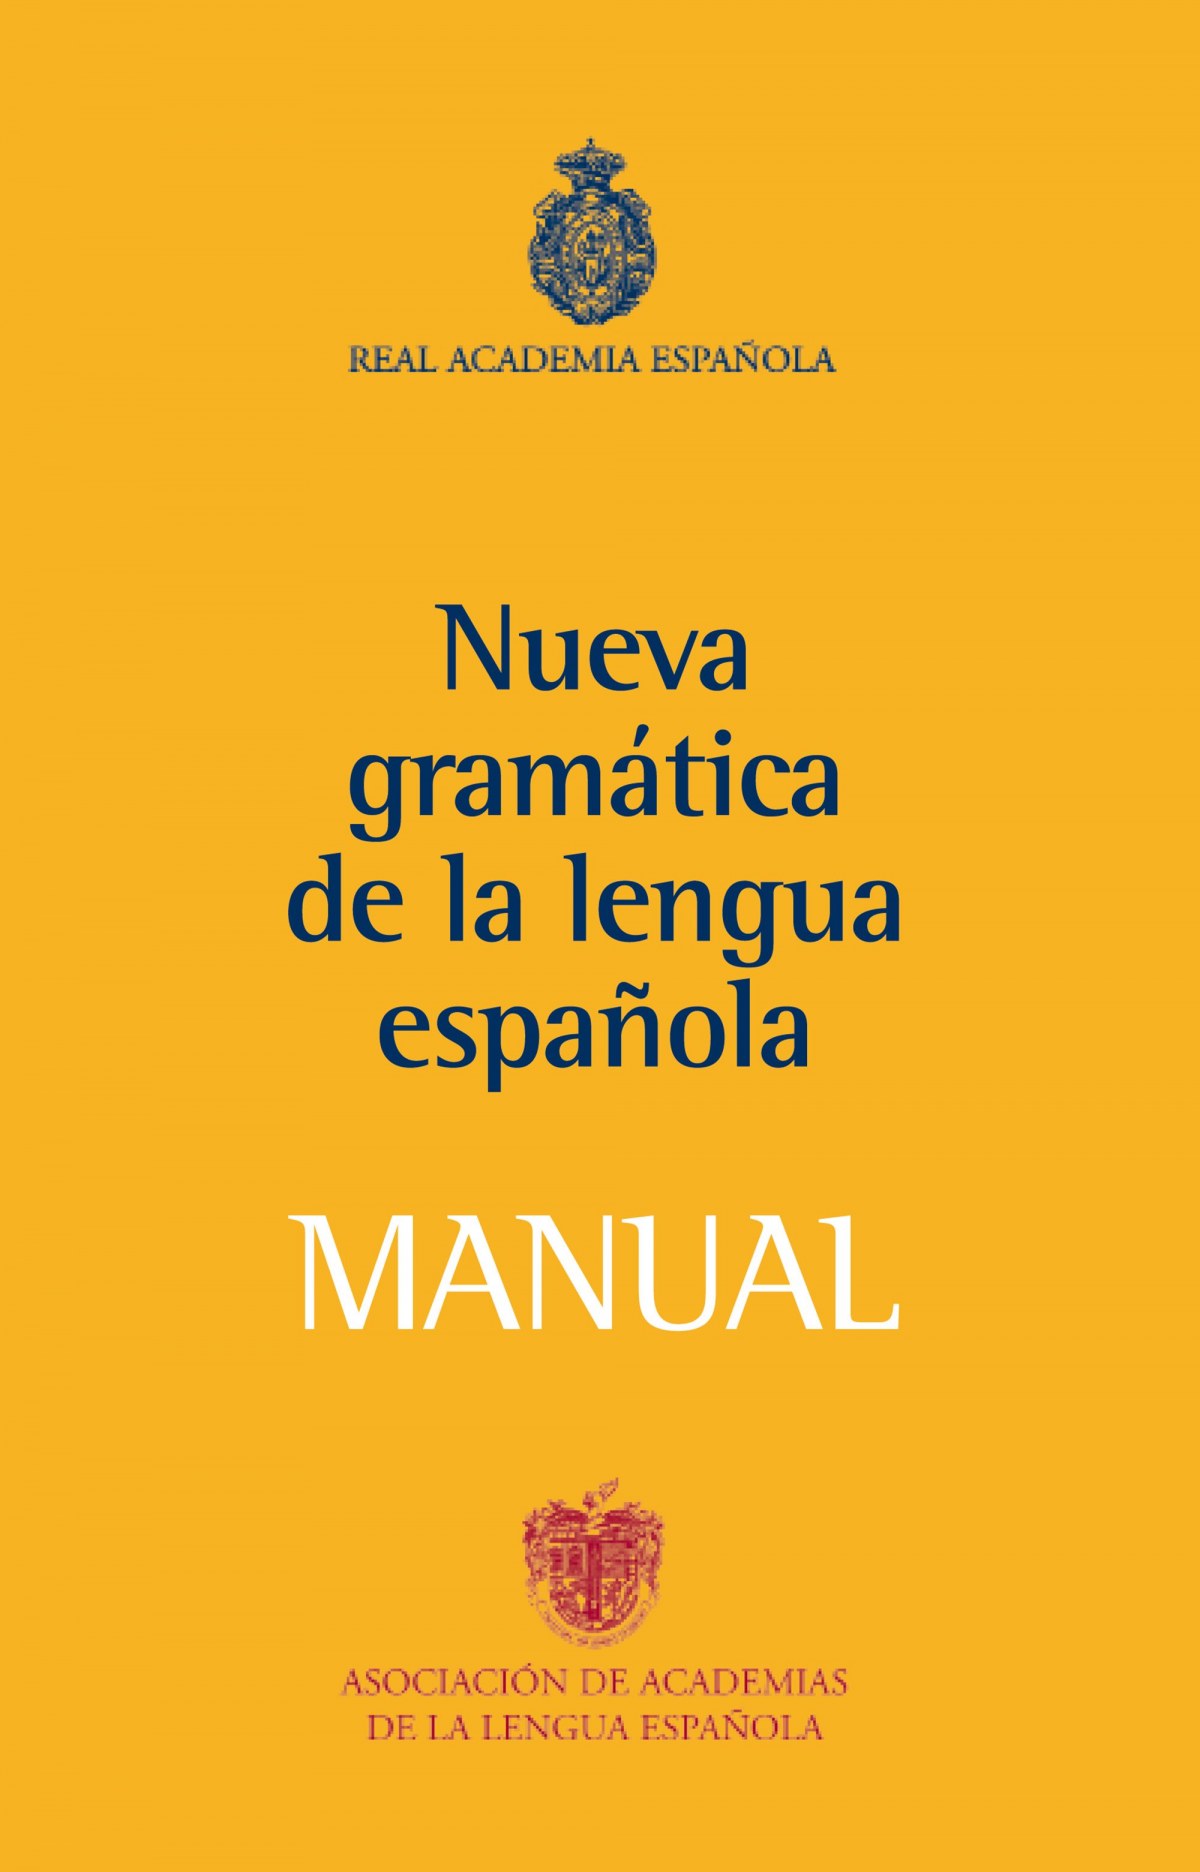 Manual de la Nueva Gramática de la lengua española - Real Academia Española